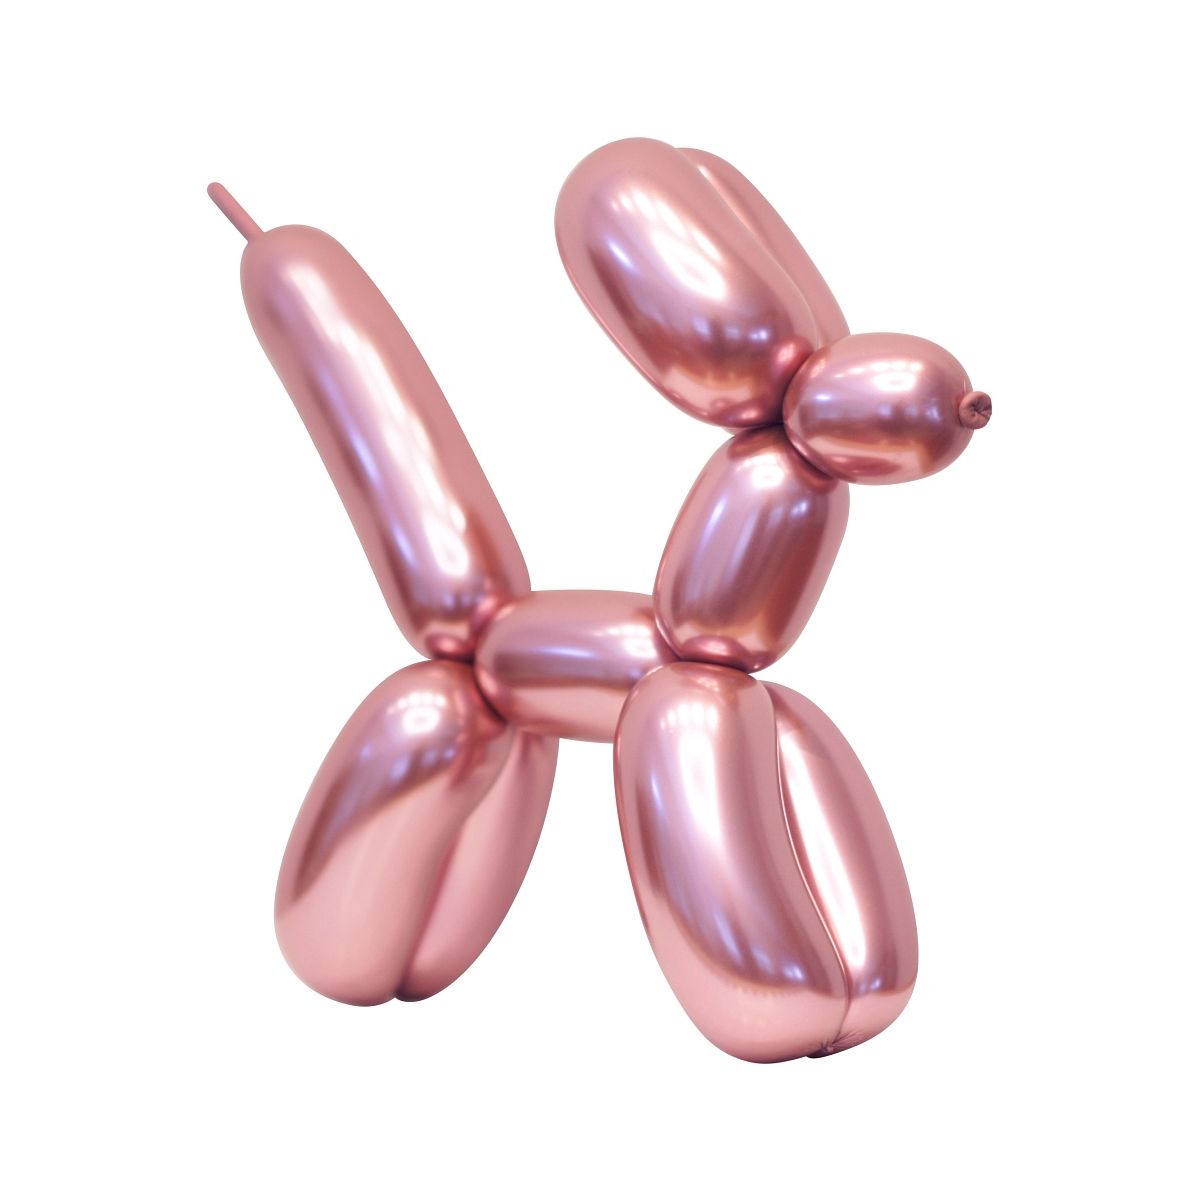 Balon gumowy Godan do modelowania, różowy różowa 1500mm (CB-MLRO)